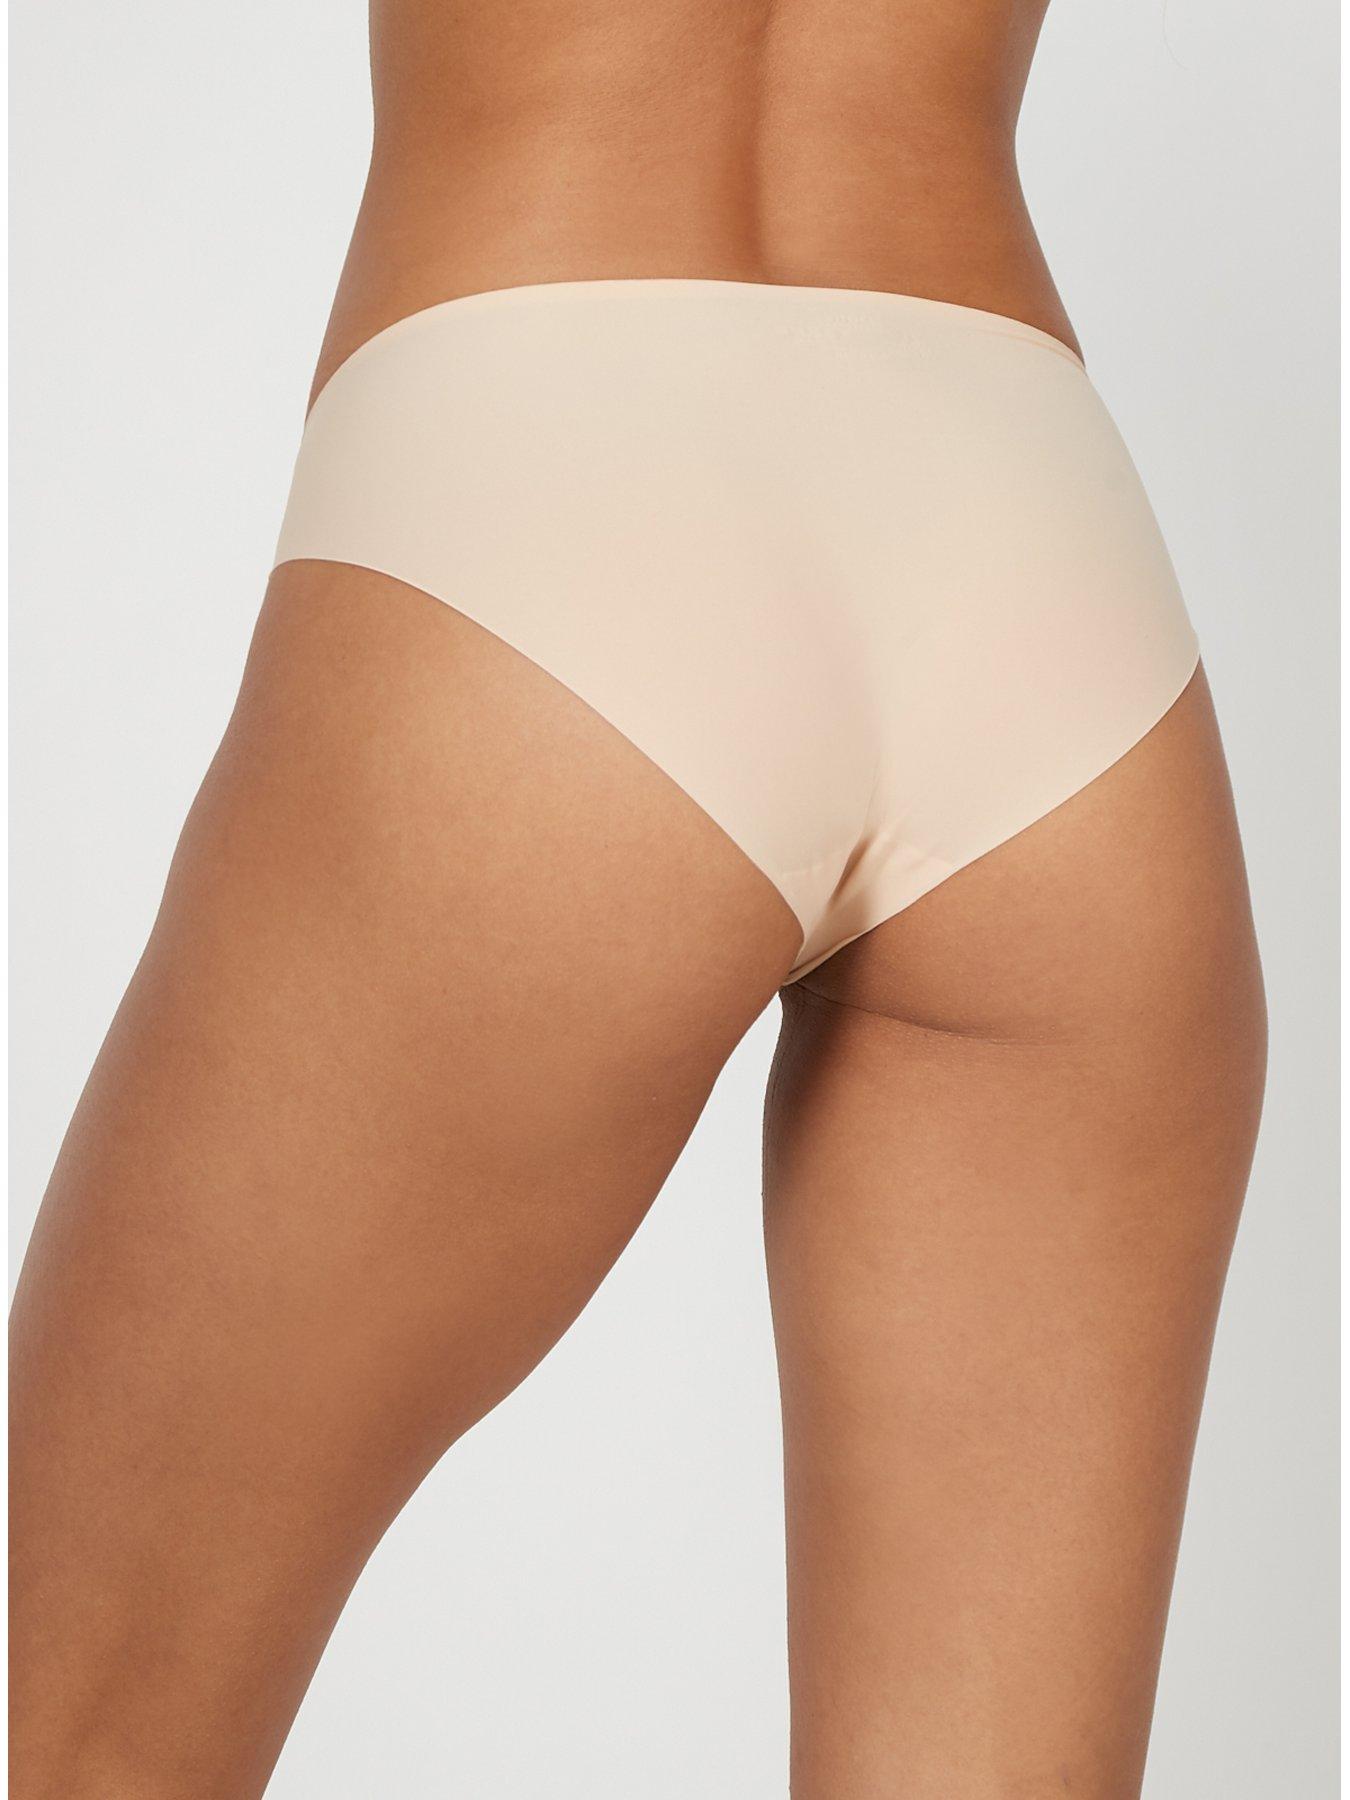 3 Pc Women's Laser Cut Seamless Brief High Waist Panties Underwear Beige  Nude L